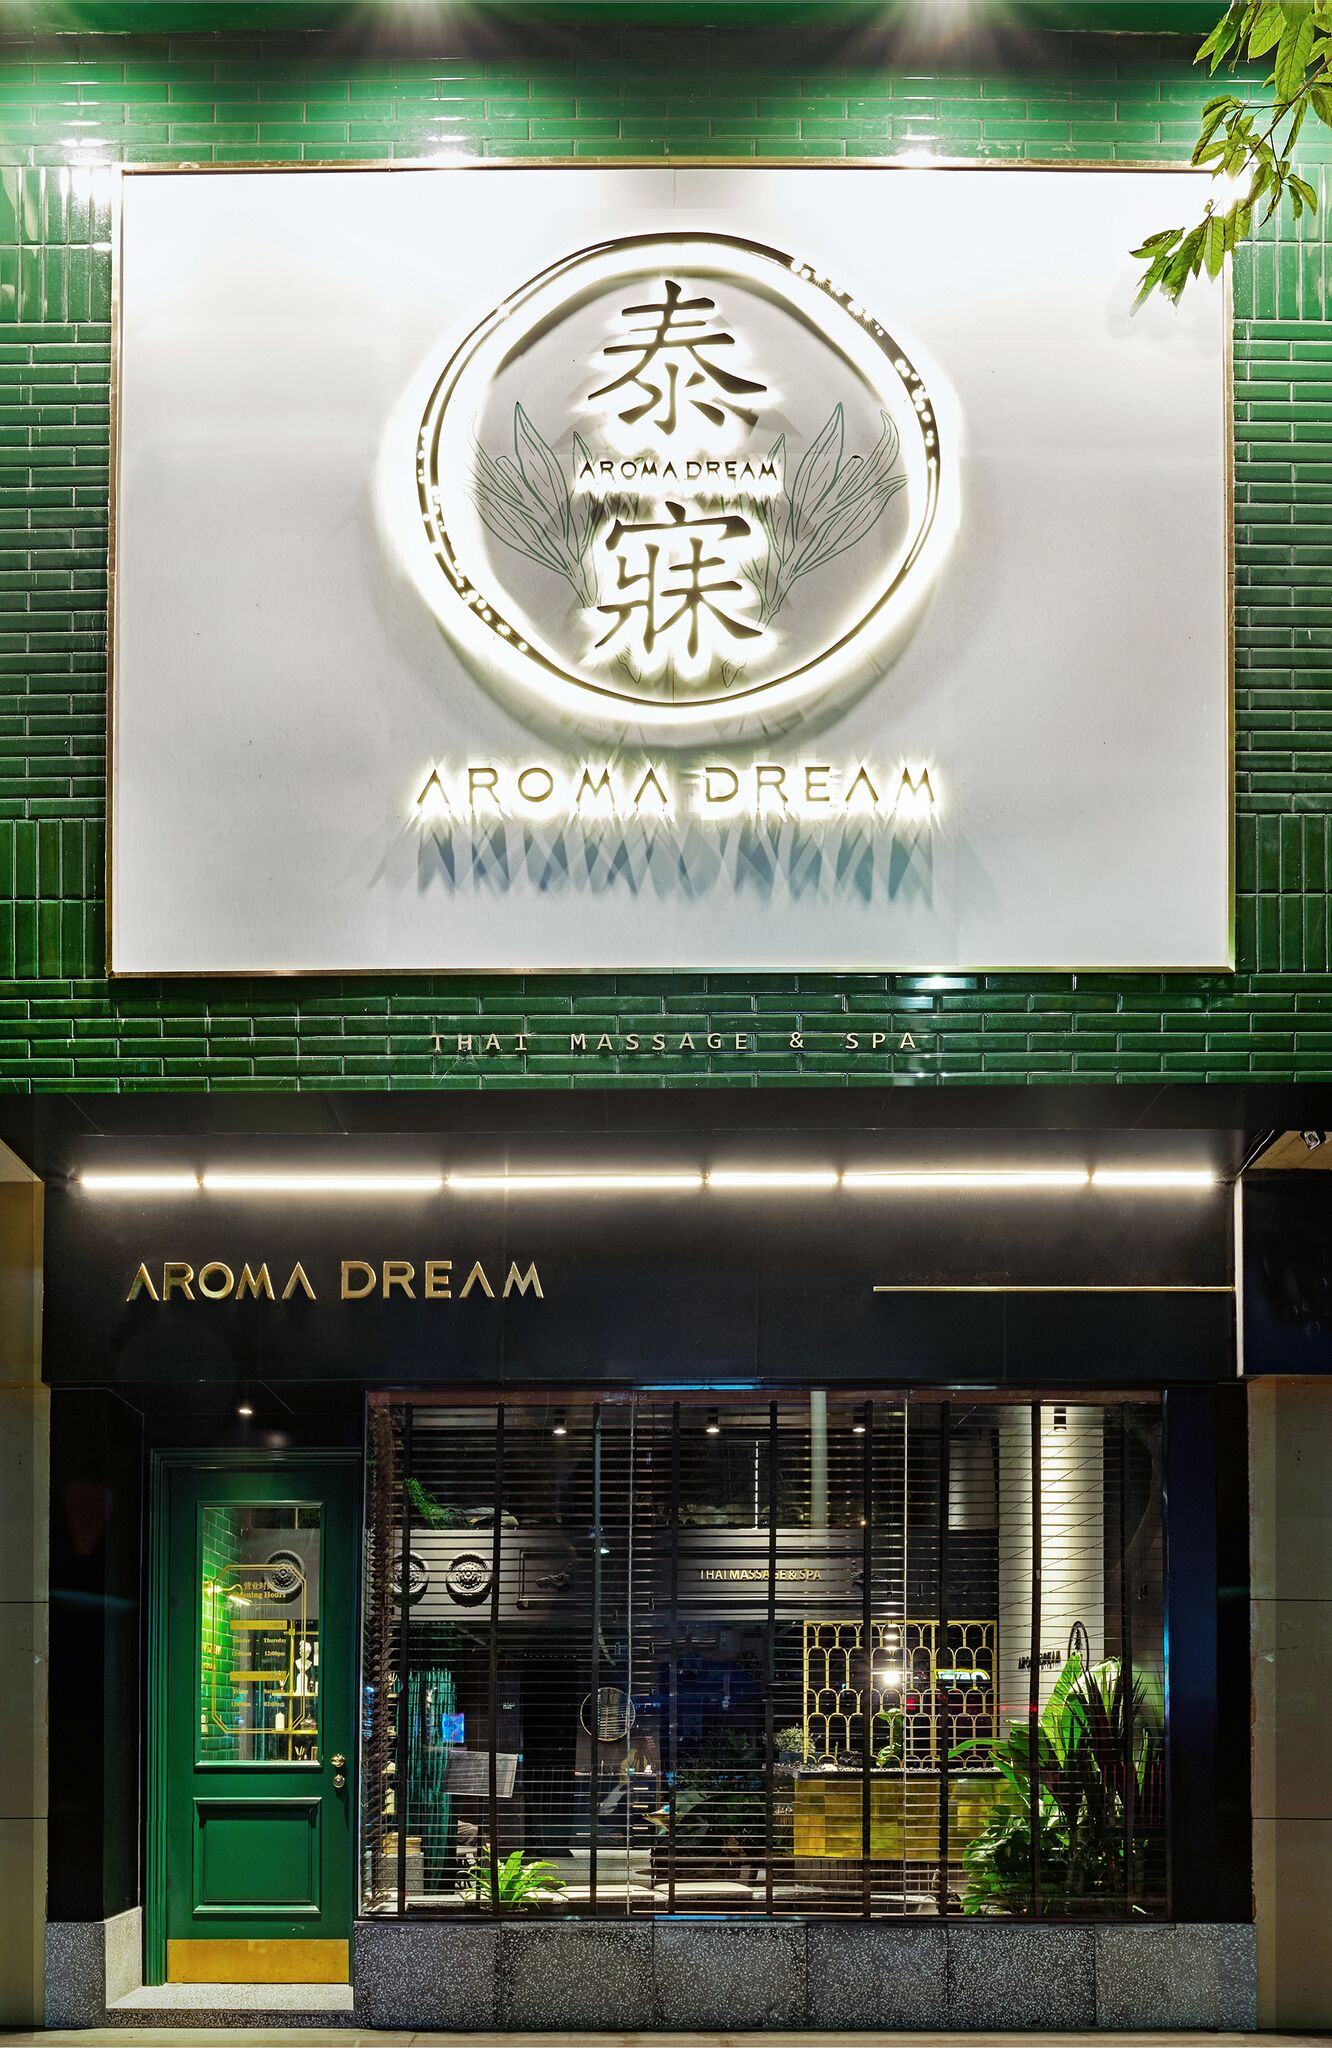 Aroma Dream Thai Massage & Spa in Shenzhen, China by DDDD Creative Studio